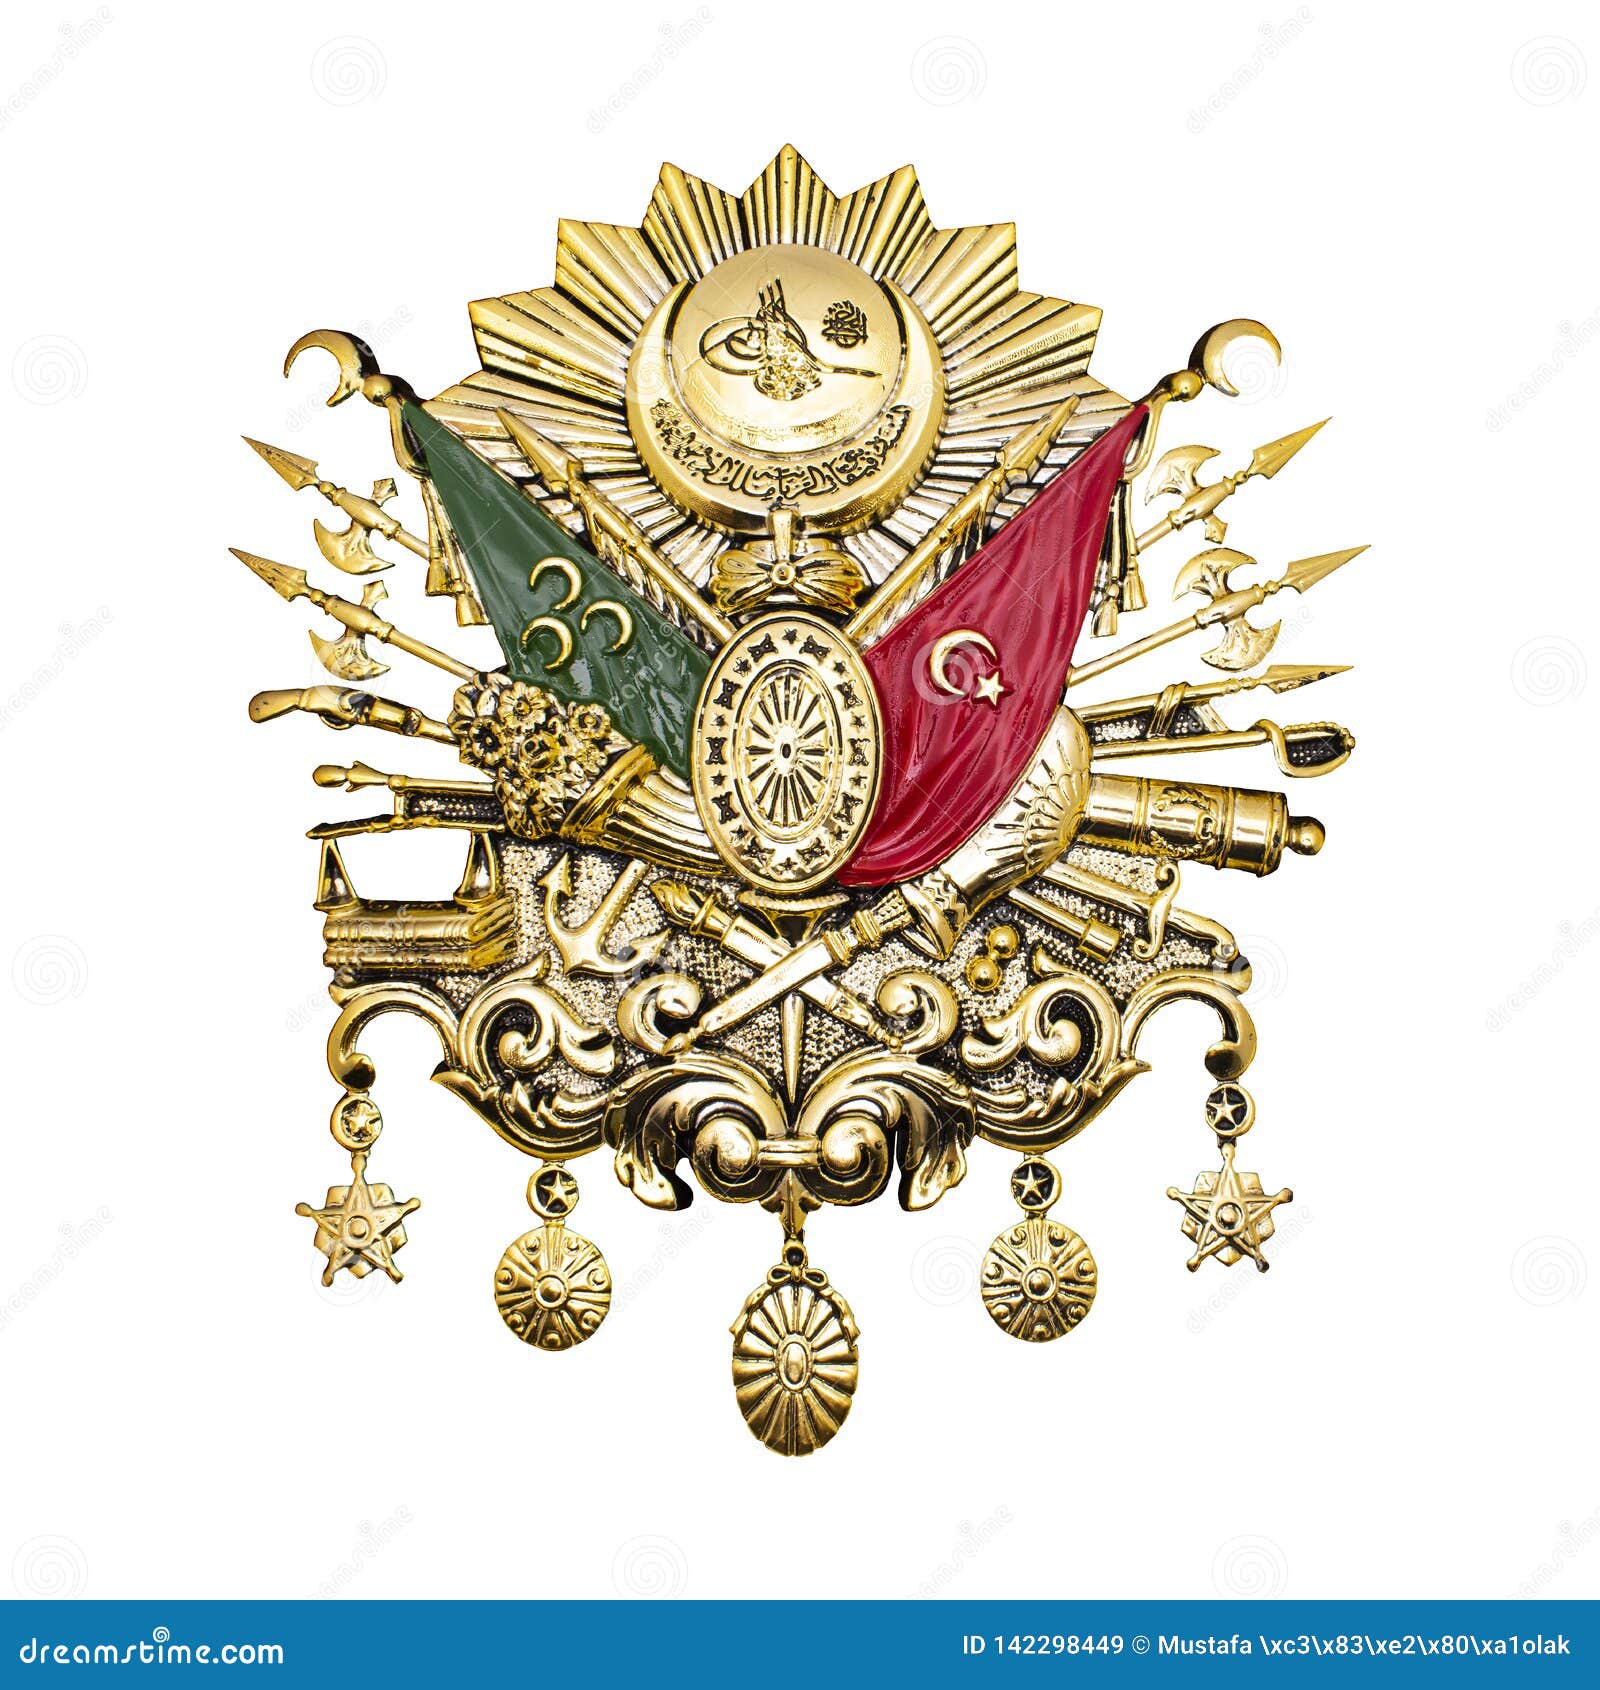 ottoman empire emblem. golden-leaf ottoman empire emblem.